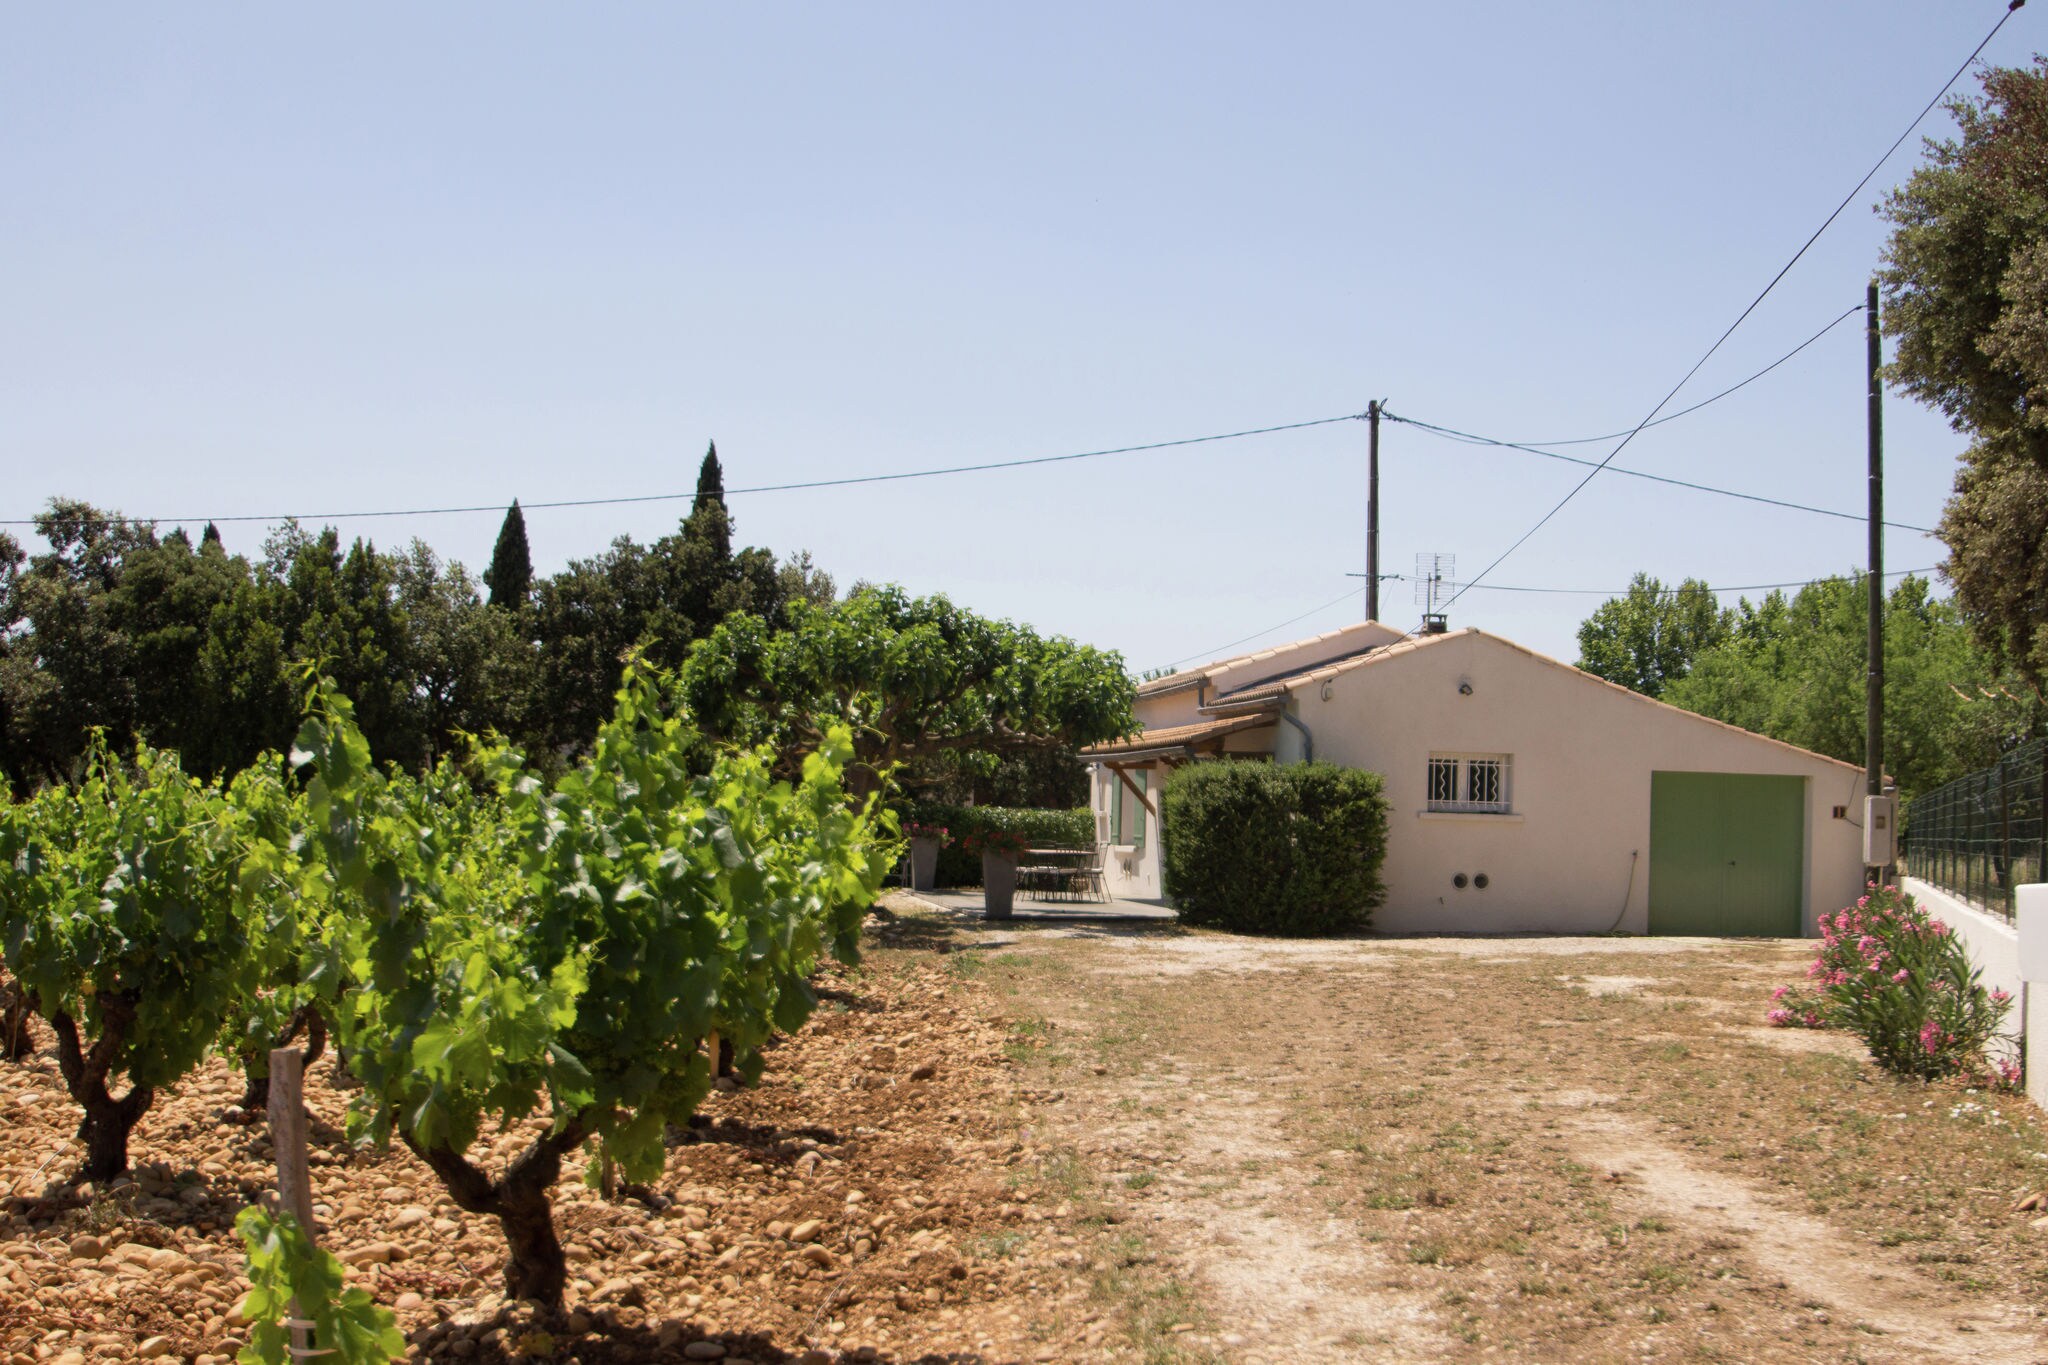 Maison de vacances indépendante dans les vignes près de Châteauneuf-du-Pape